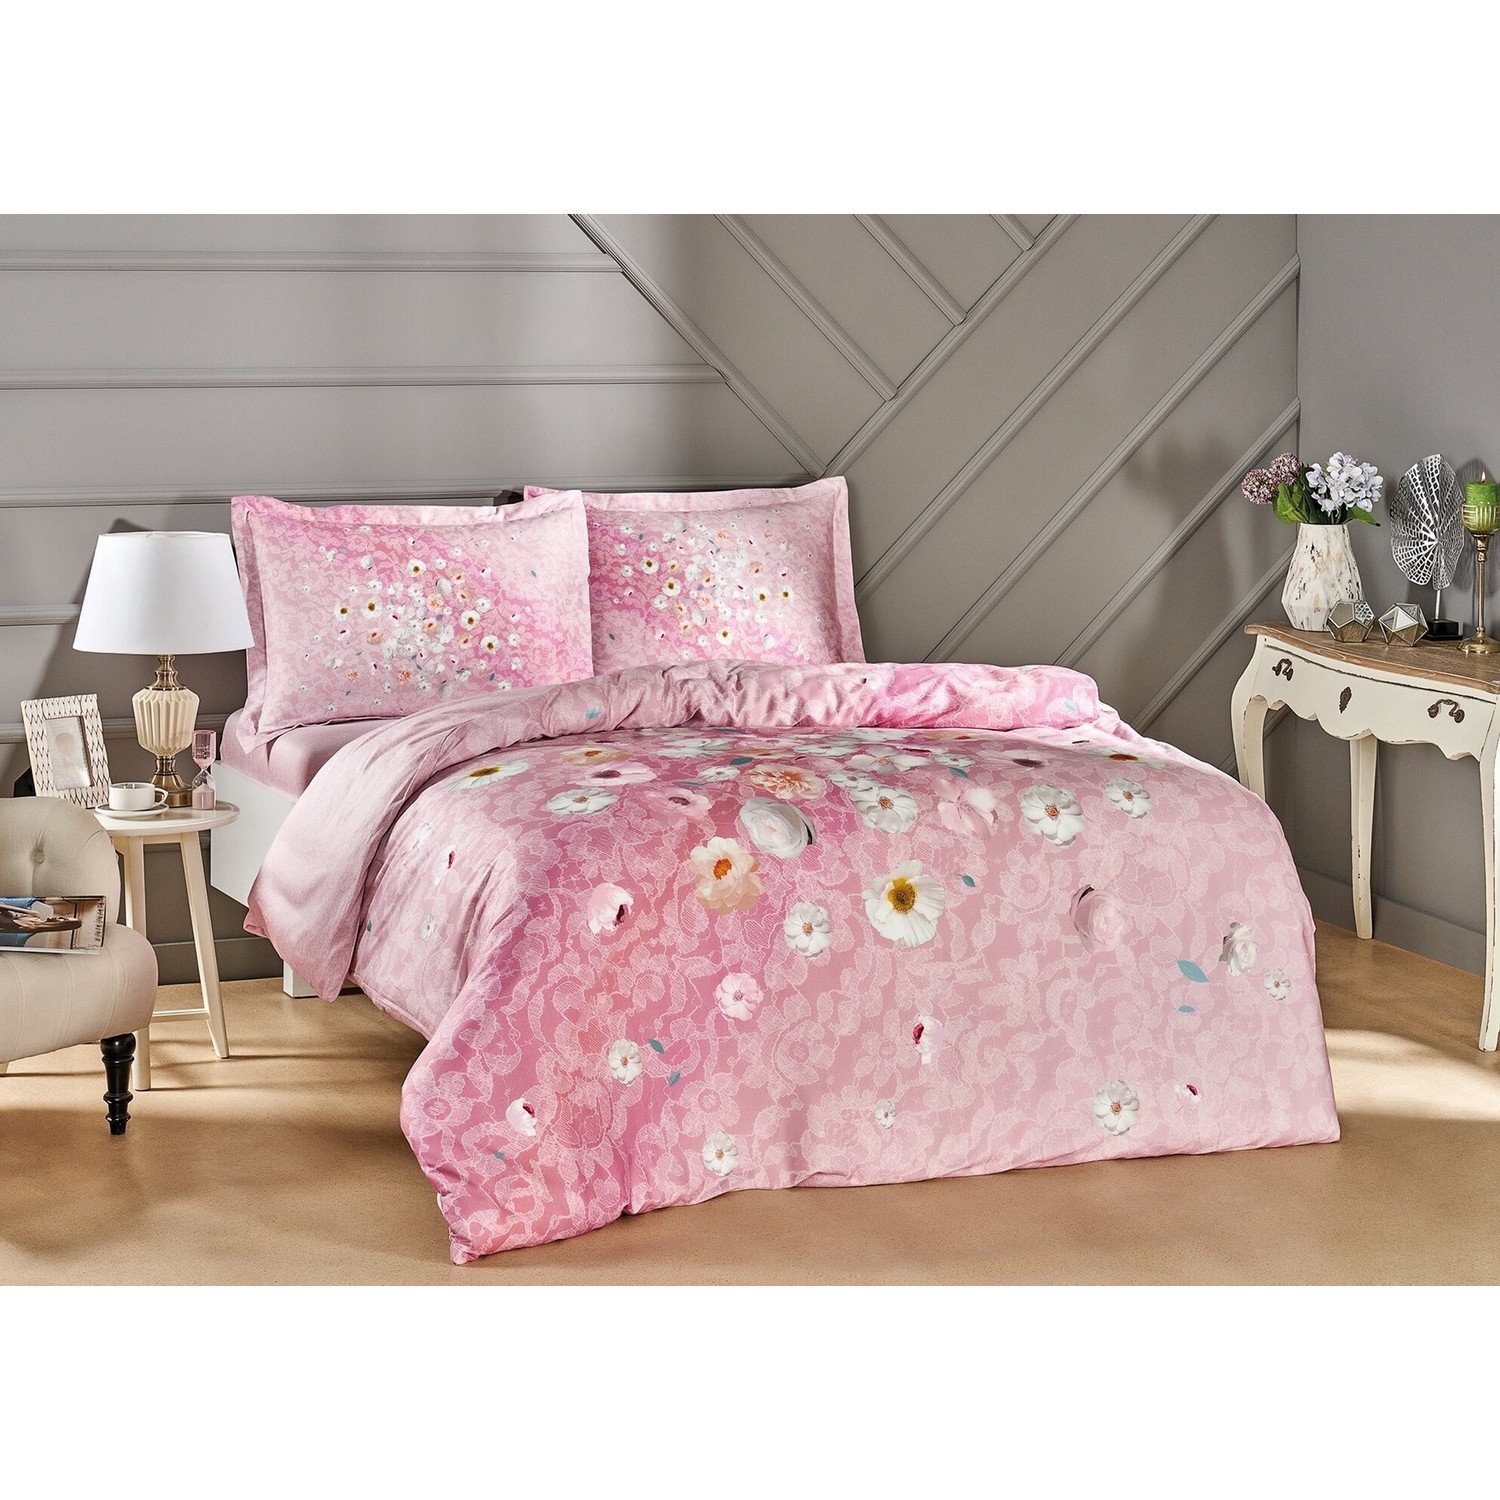 tac комплект постельного белья из хлопкового атласа marilla Tac - Комплект постельного белья из хлопкового атласа Serlina розового цвета